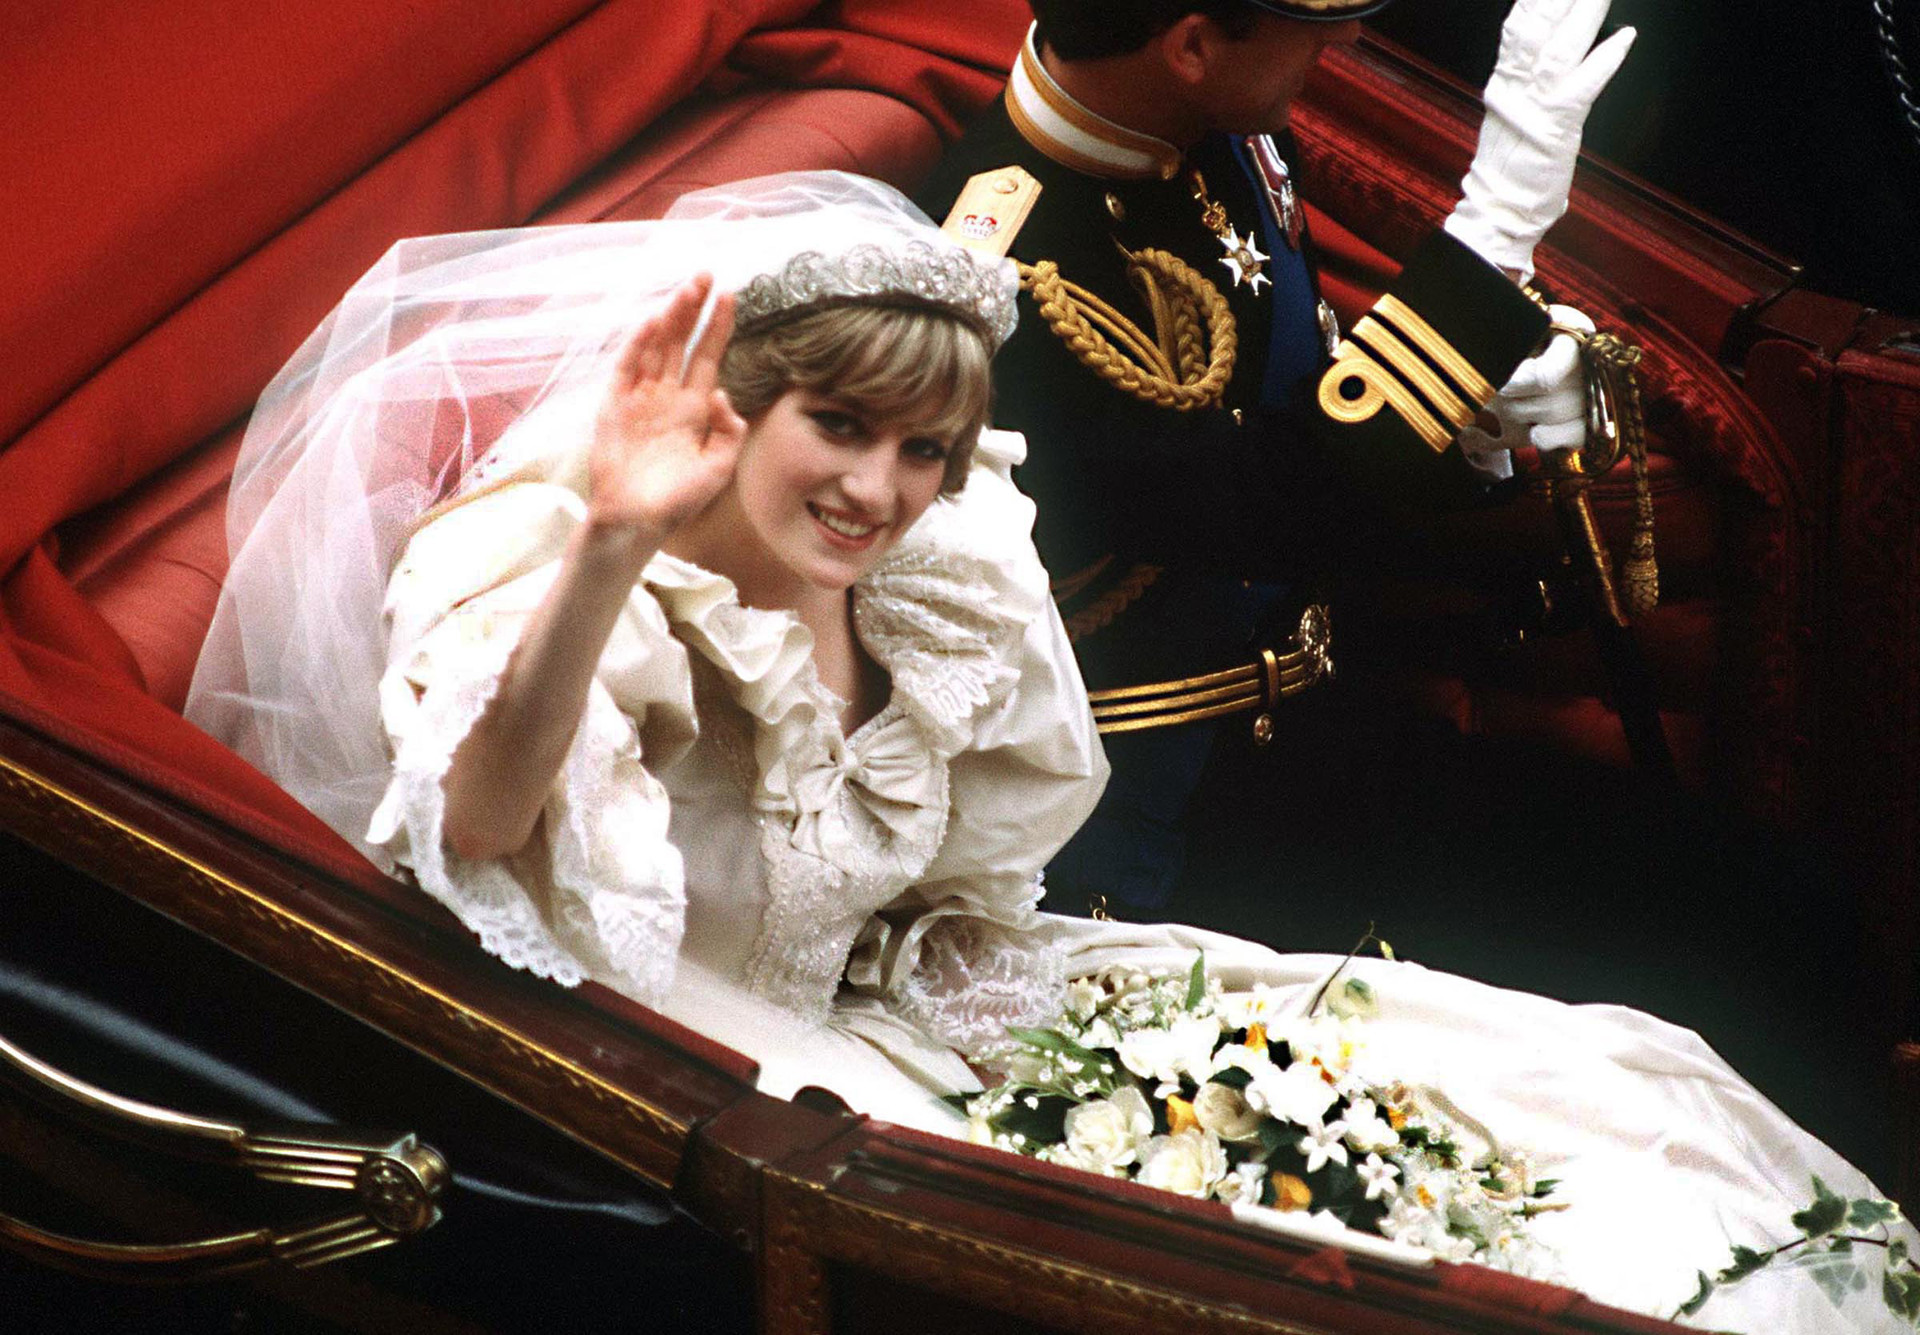 Vương miện ‘The Spencer Tiara’, một vật gia truyền của gia đình Spencer đã trở thành vật hoàng gia sau khi Công nương Diana đeo vào ngày cưới năm 1981. Ảnh: CNN.